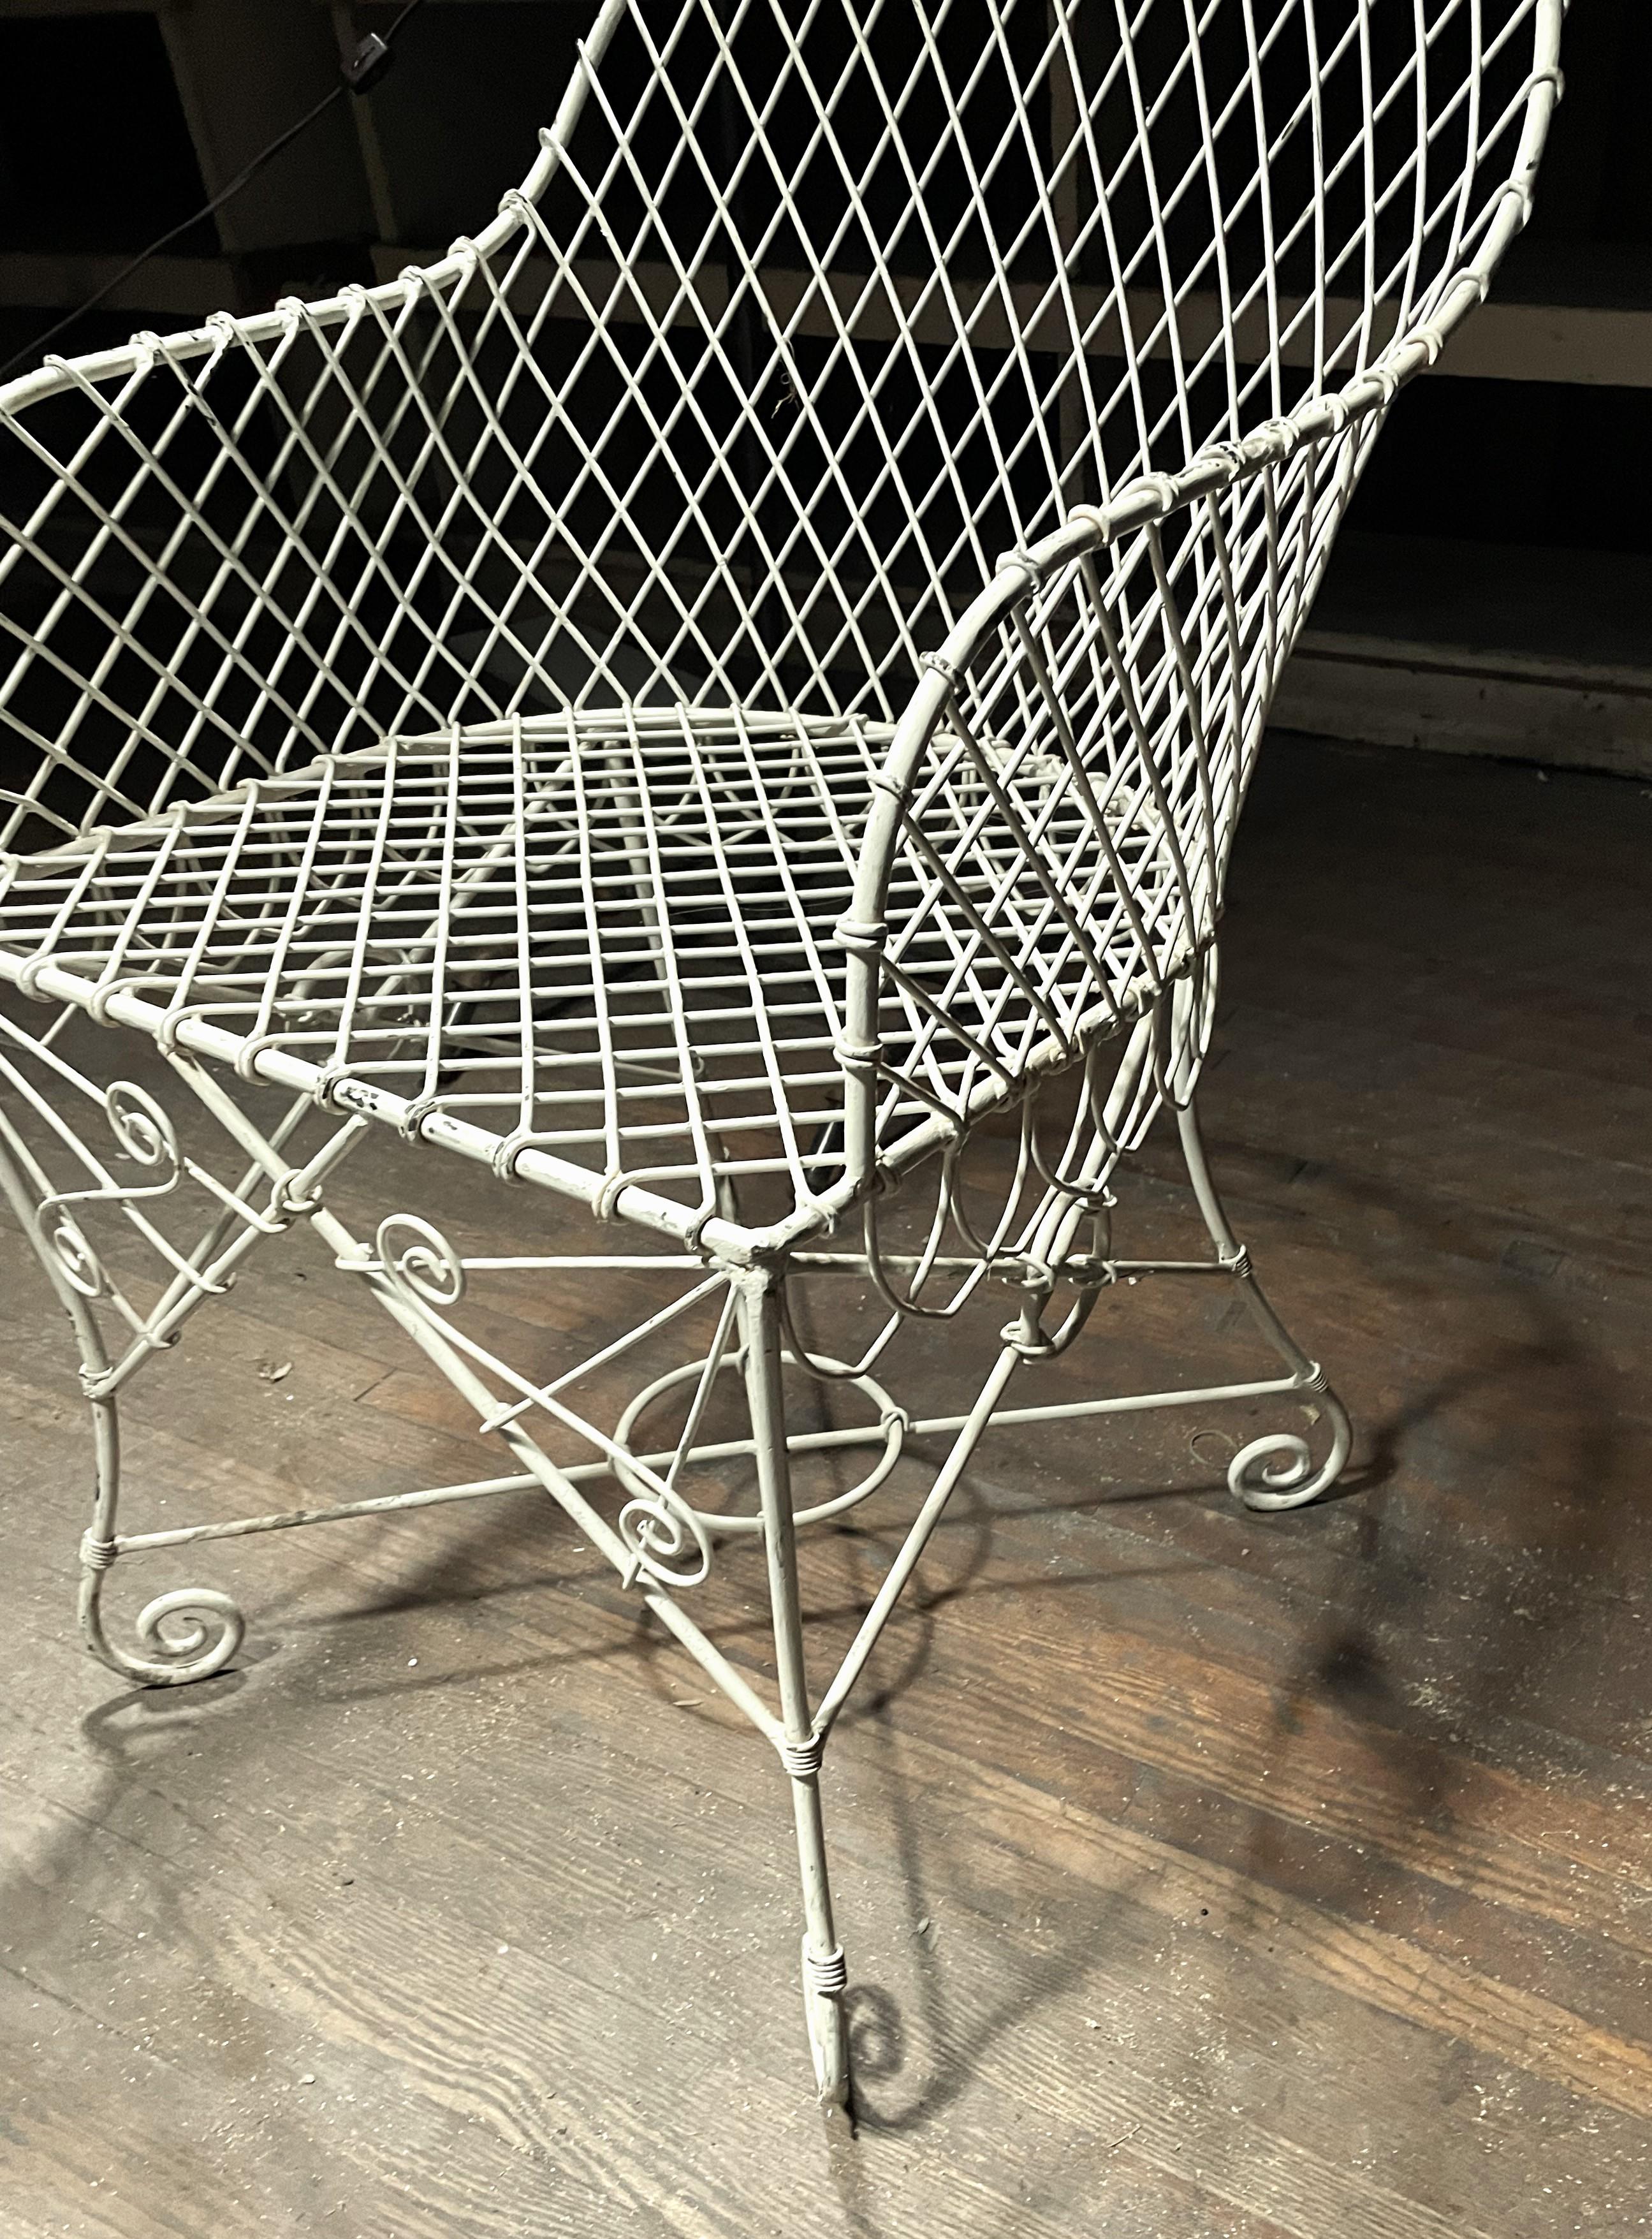 Il s'agit de la plus belle chaise à dossier en fil de fer français avec une magnifique finition en peinture vieillie, des lignes fantastiques et des pieds en volute. Le travail du fer est extrêmement bien fait mais il y a quelques pertes de peinture